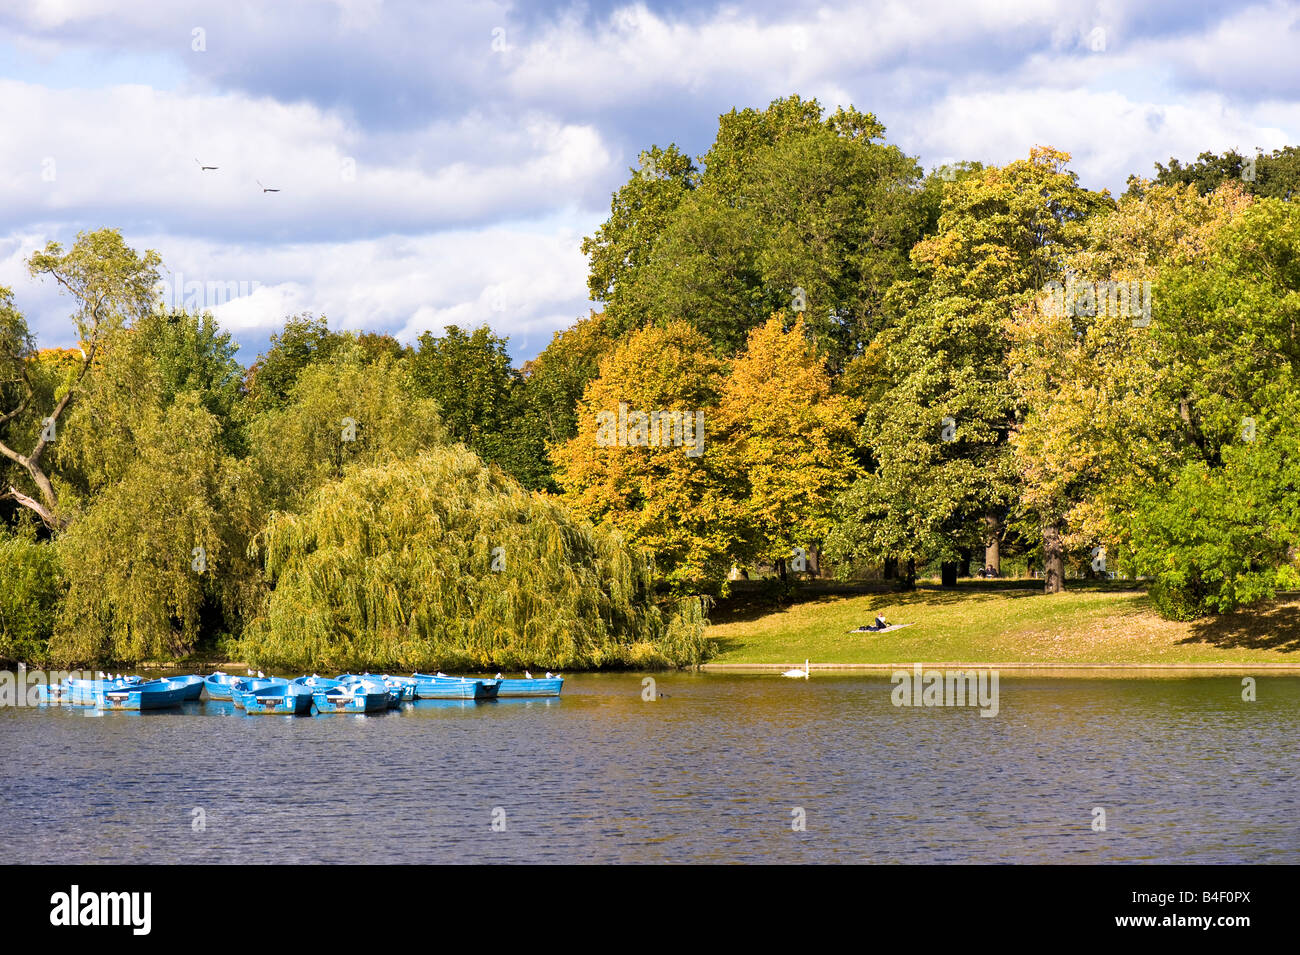 Boating lake Regents Park London United Kingdom Stock Photo